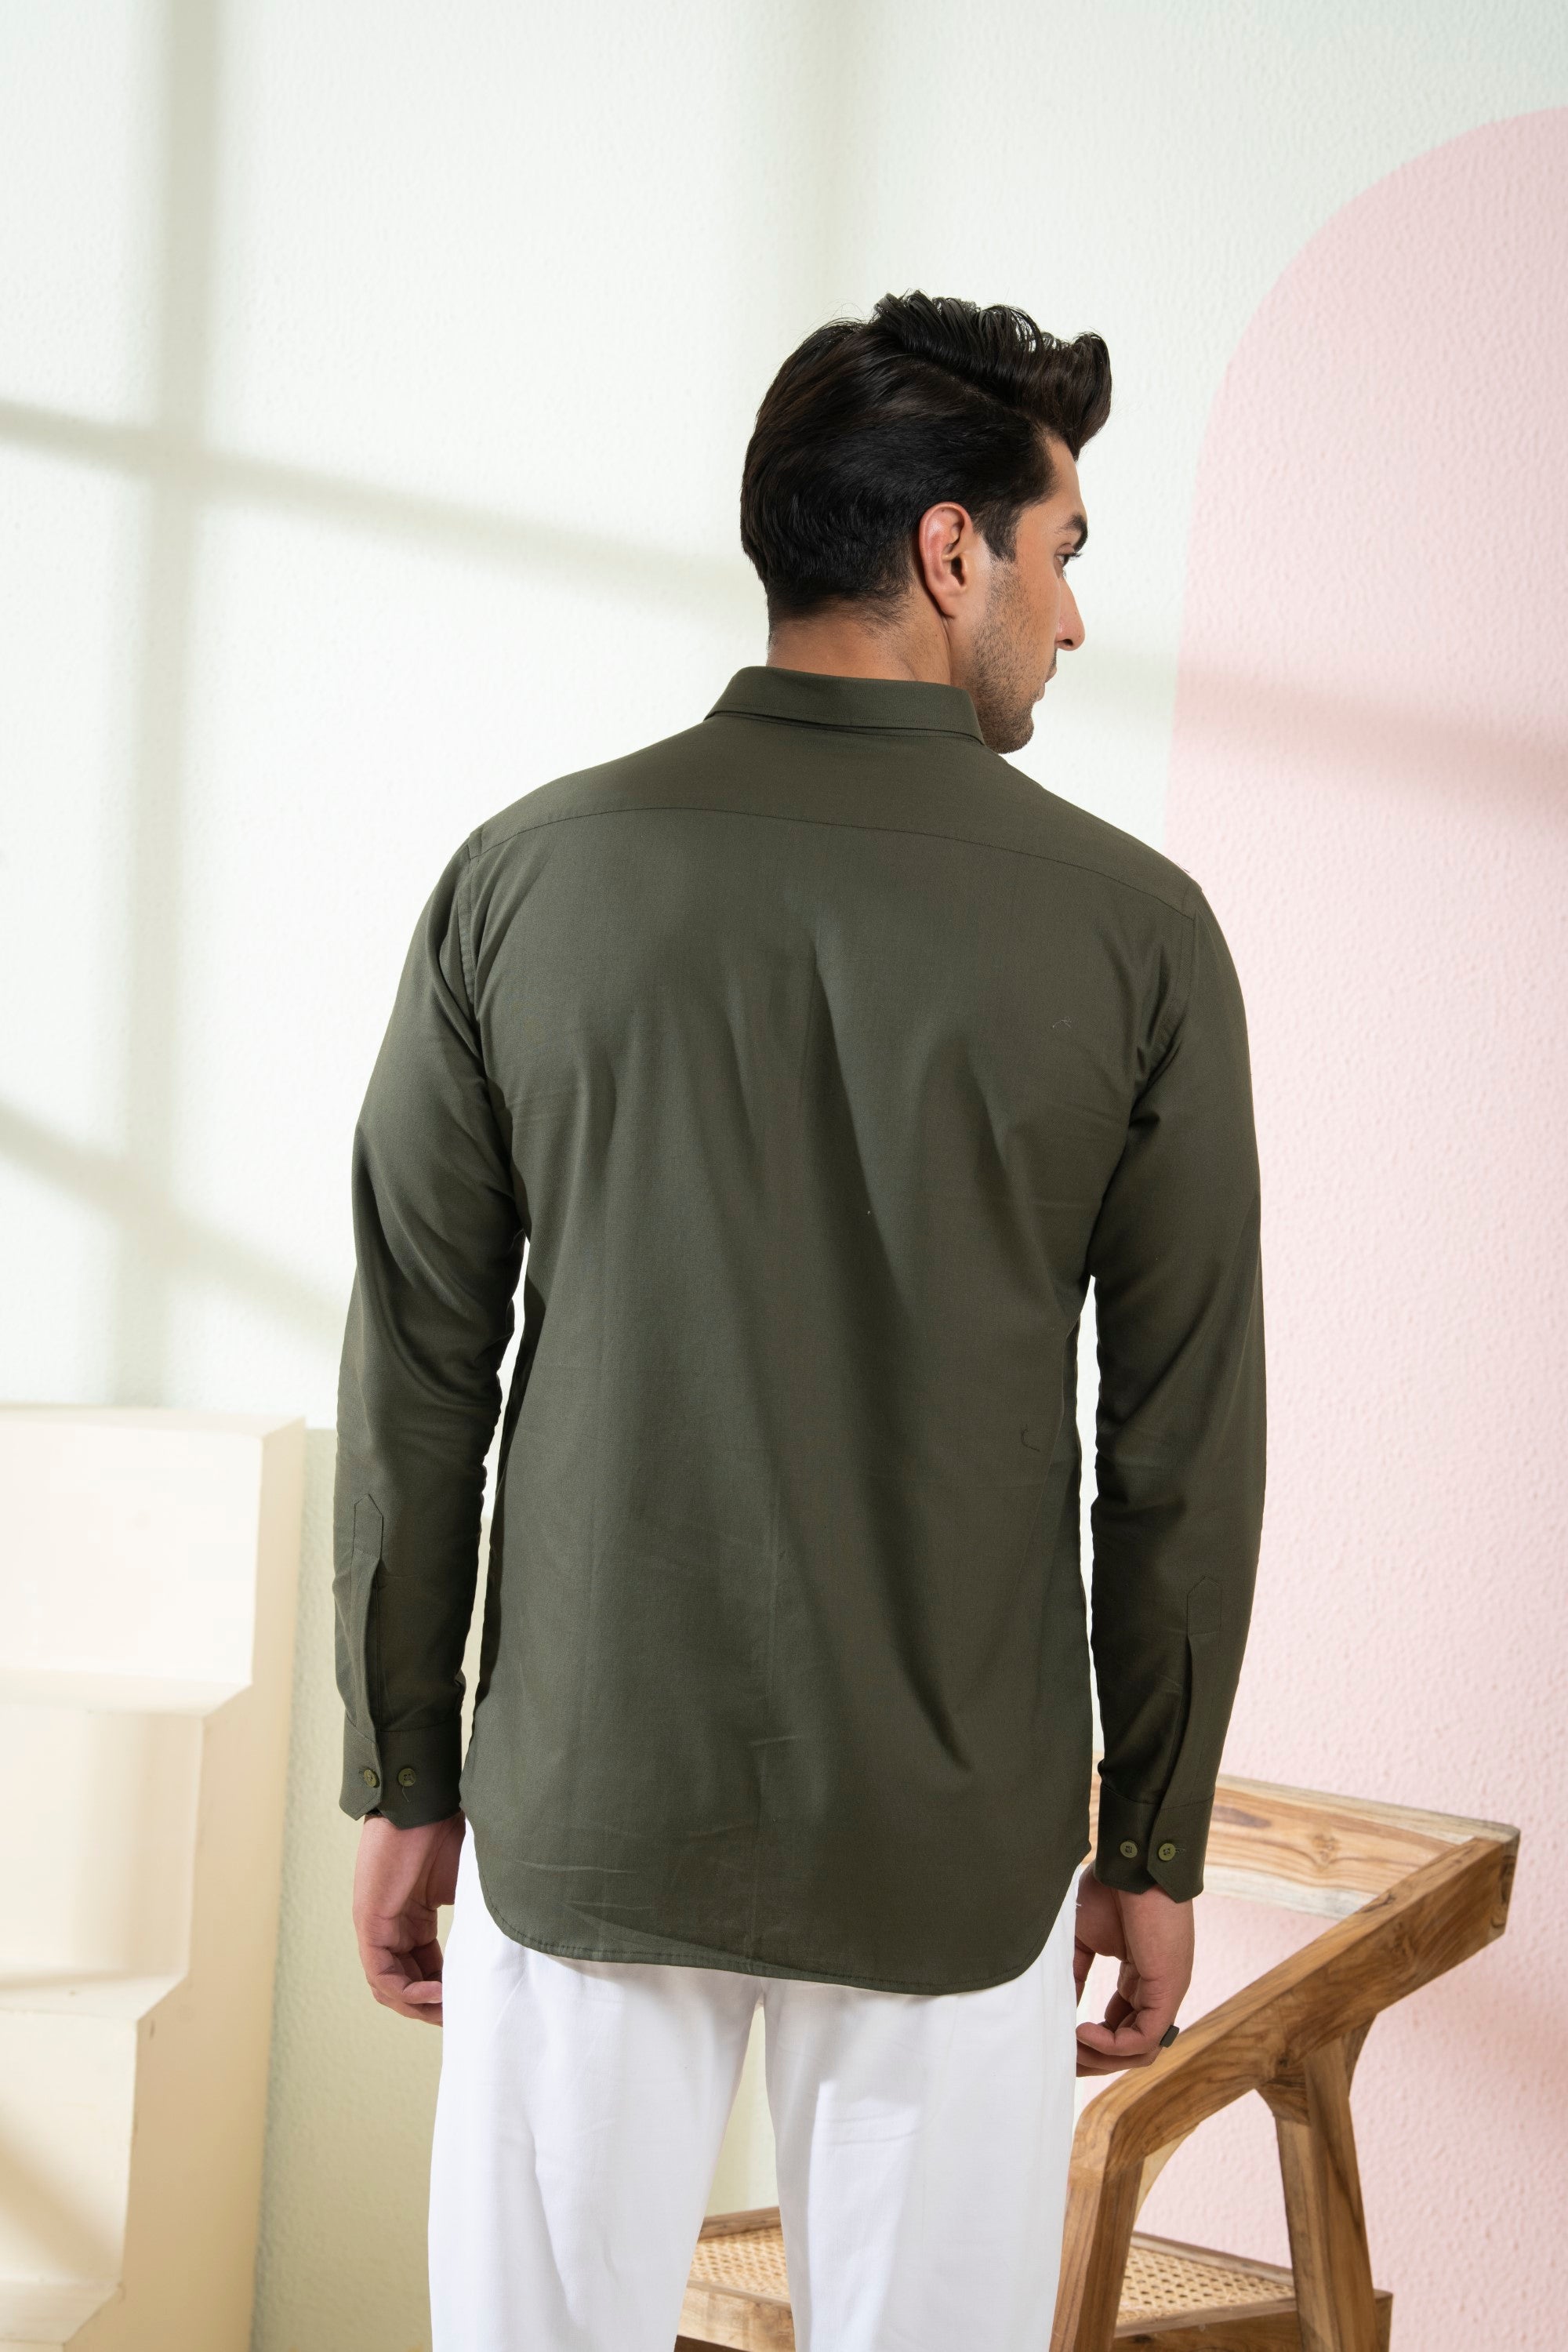 Men's Olive Green Color Avian Full Sleeves Shirt - Hilo Design